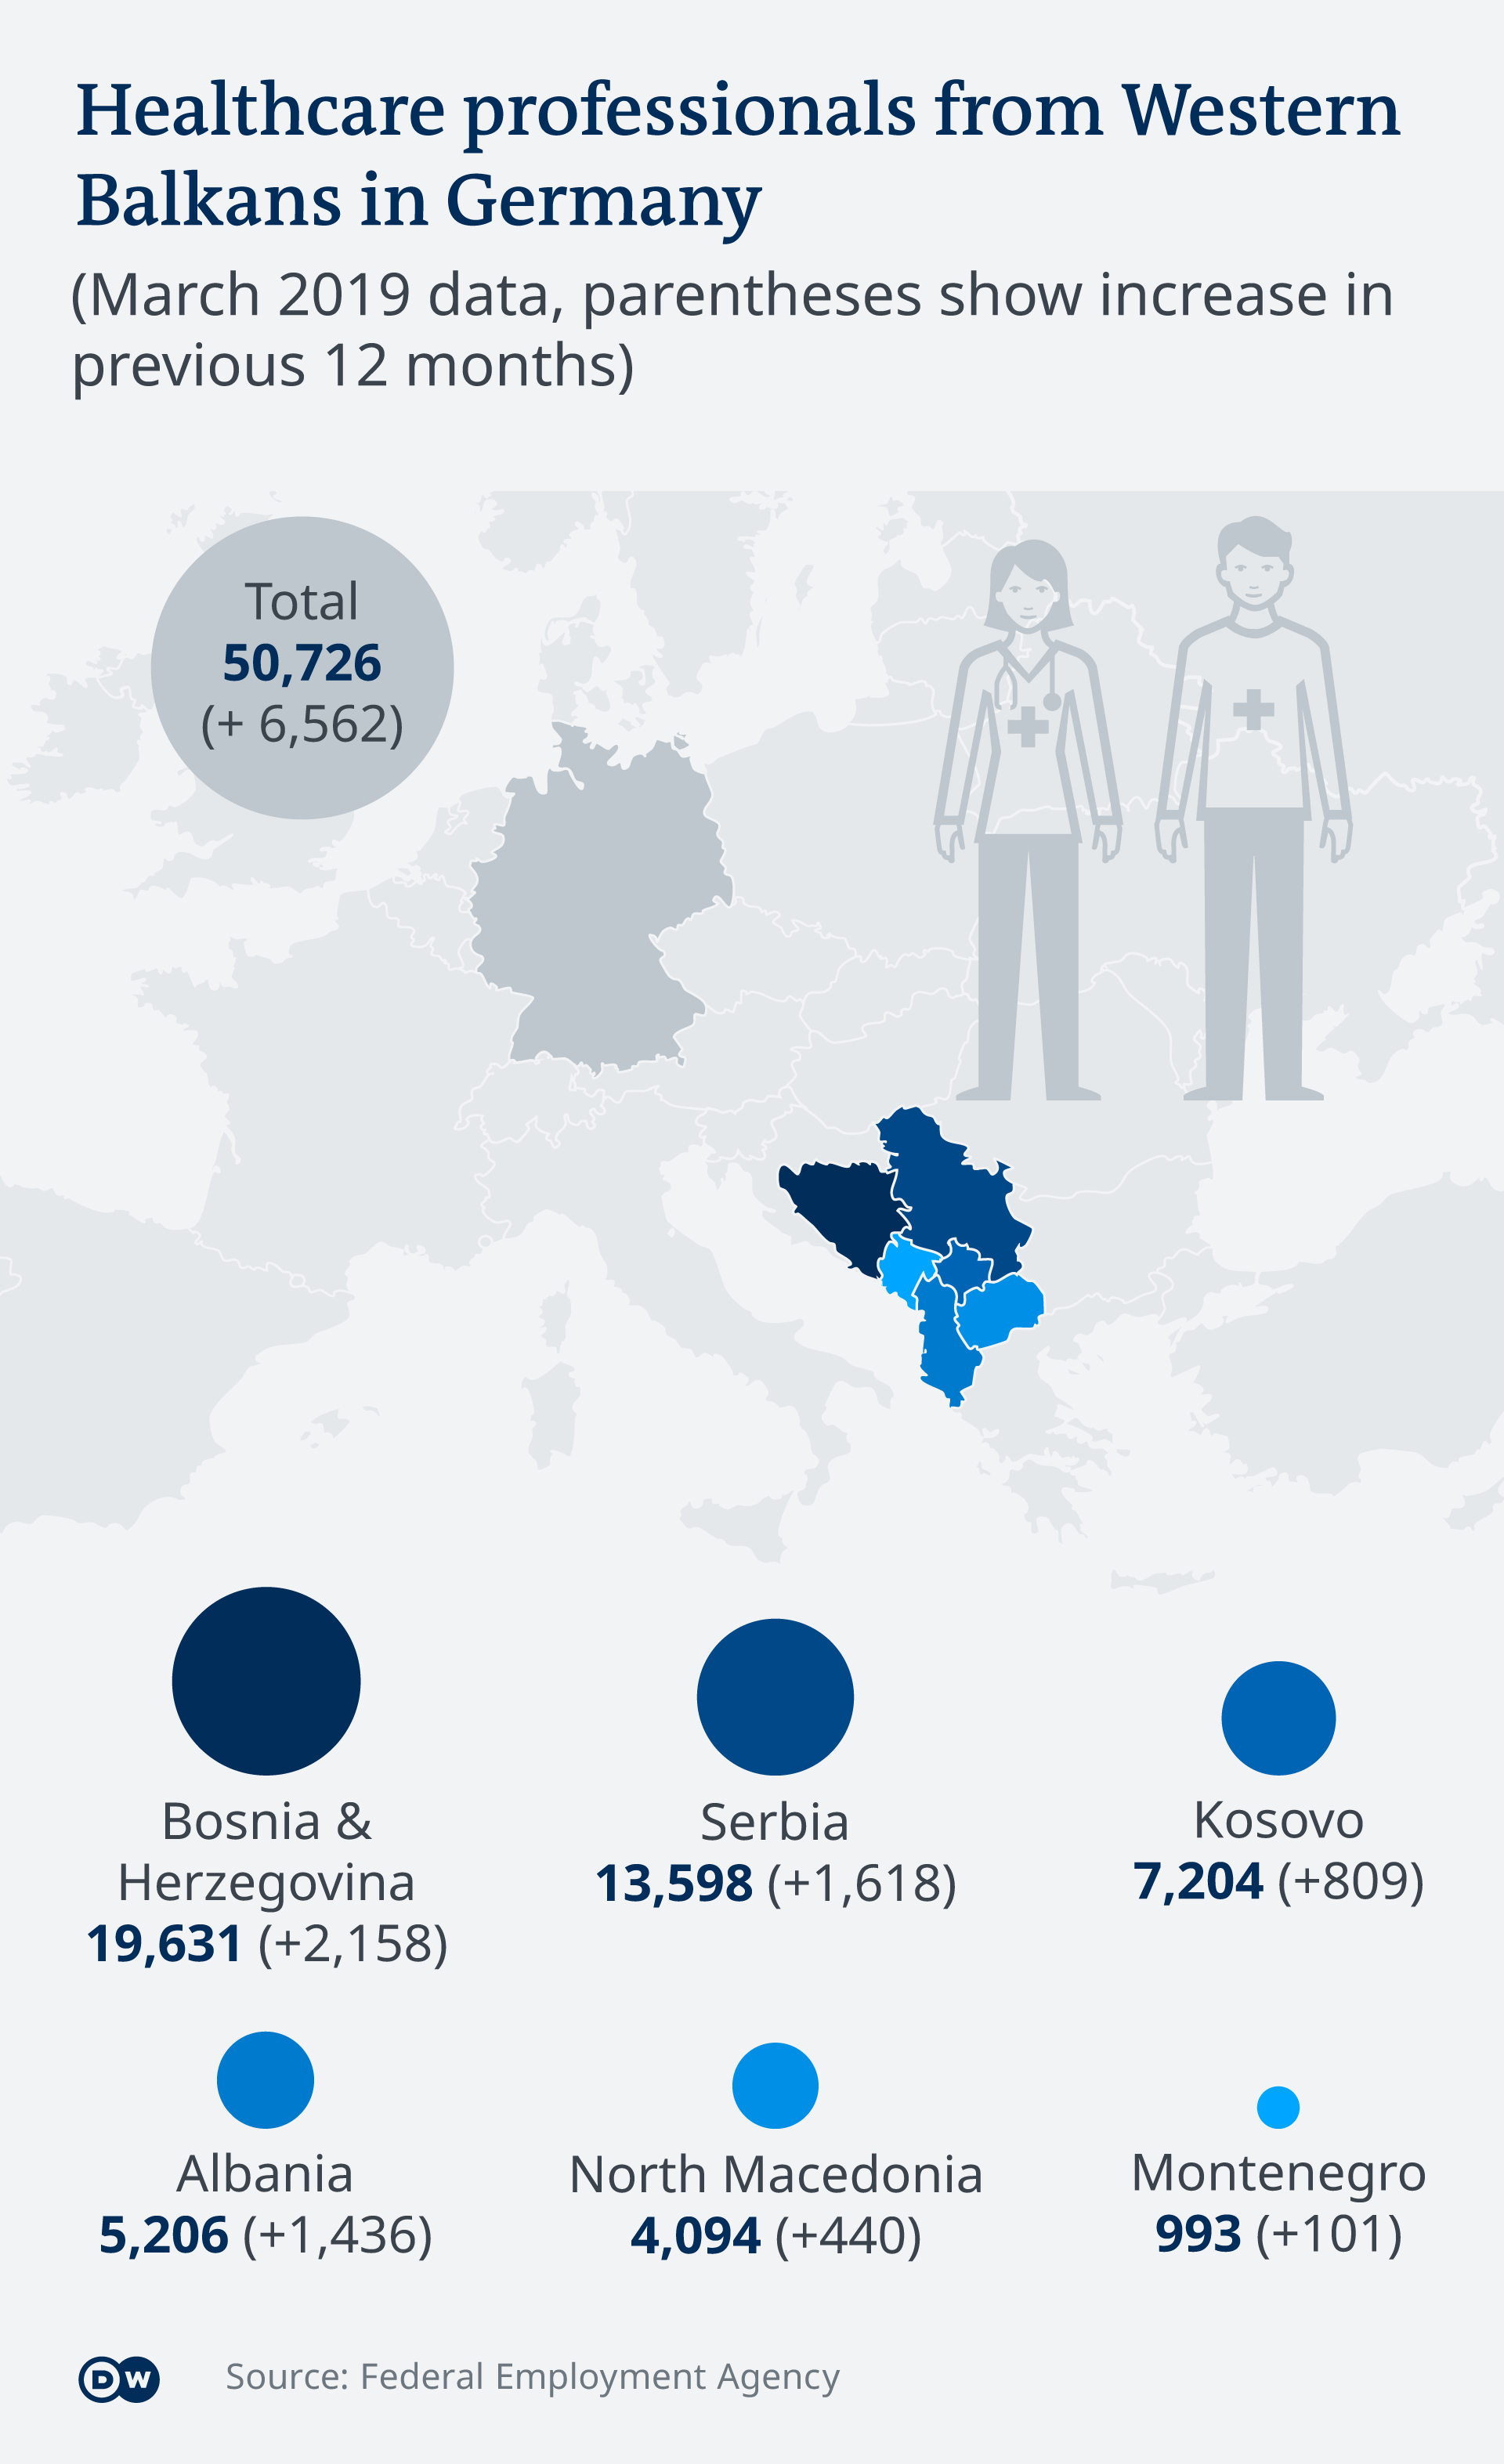 Personalul calificat din Balcani care lucra în martie 2019 în clinicile din Germania